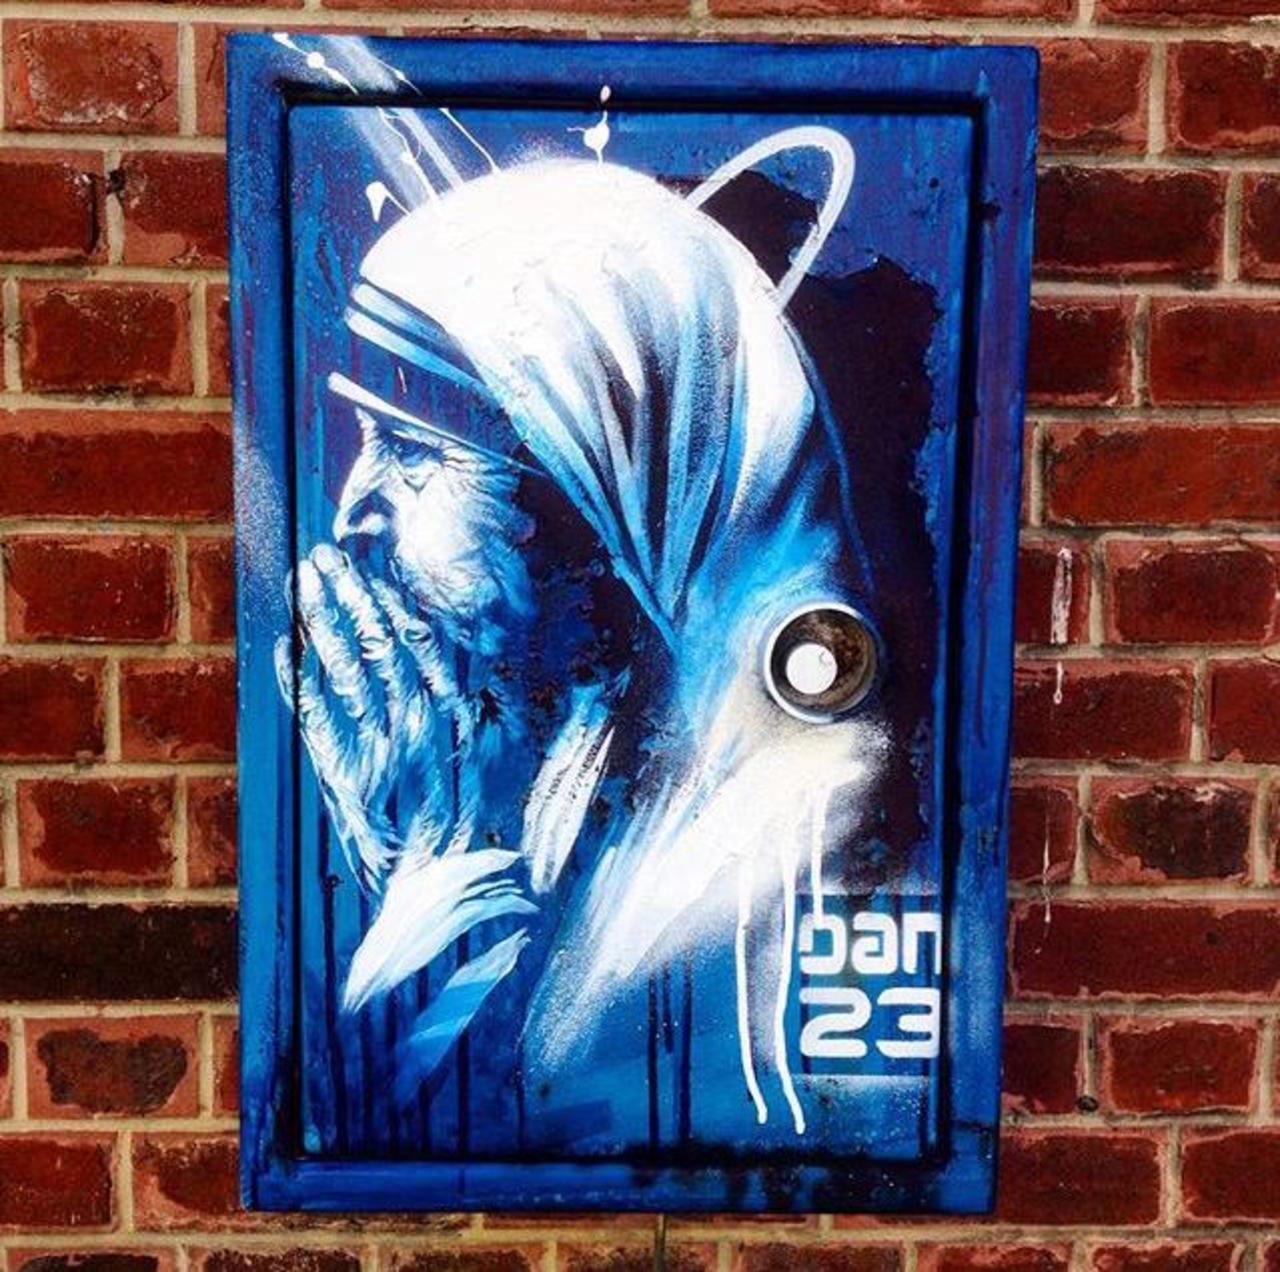 New Street Art 'Détail Spirit' by Dan23 

#art #graffiti #mural #streetart http://t.co/wAJFL4VCNR